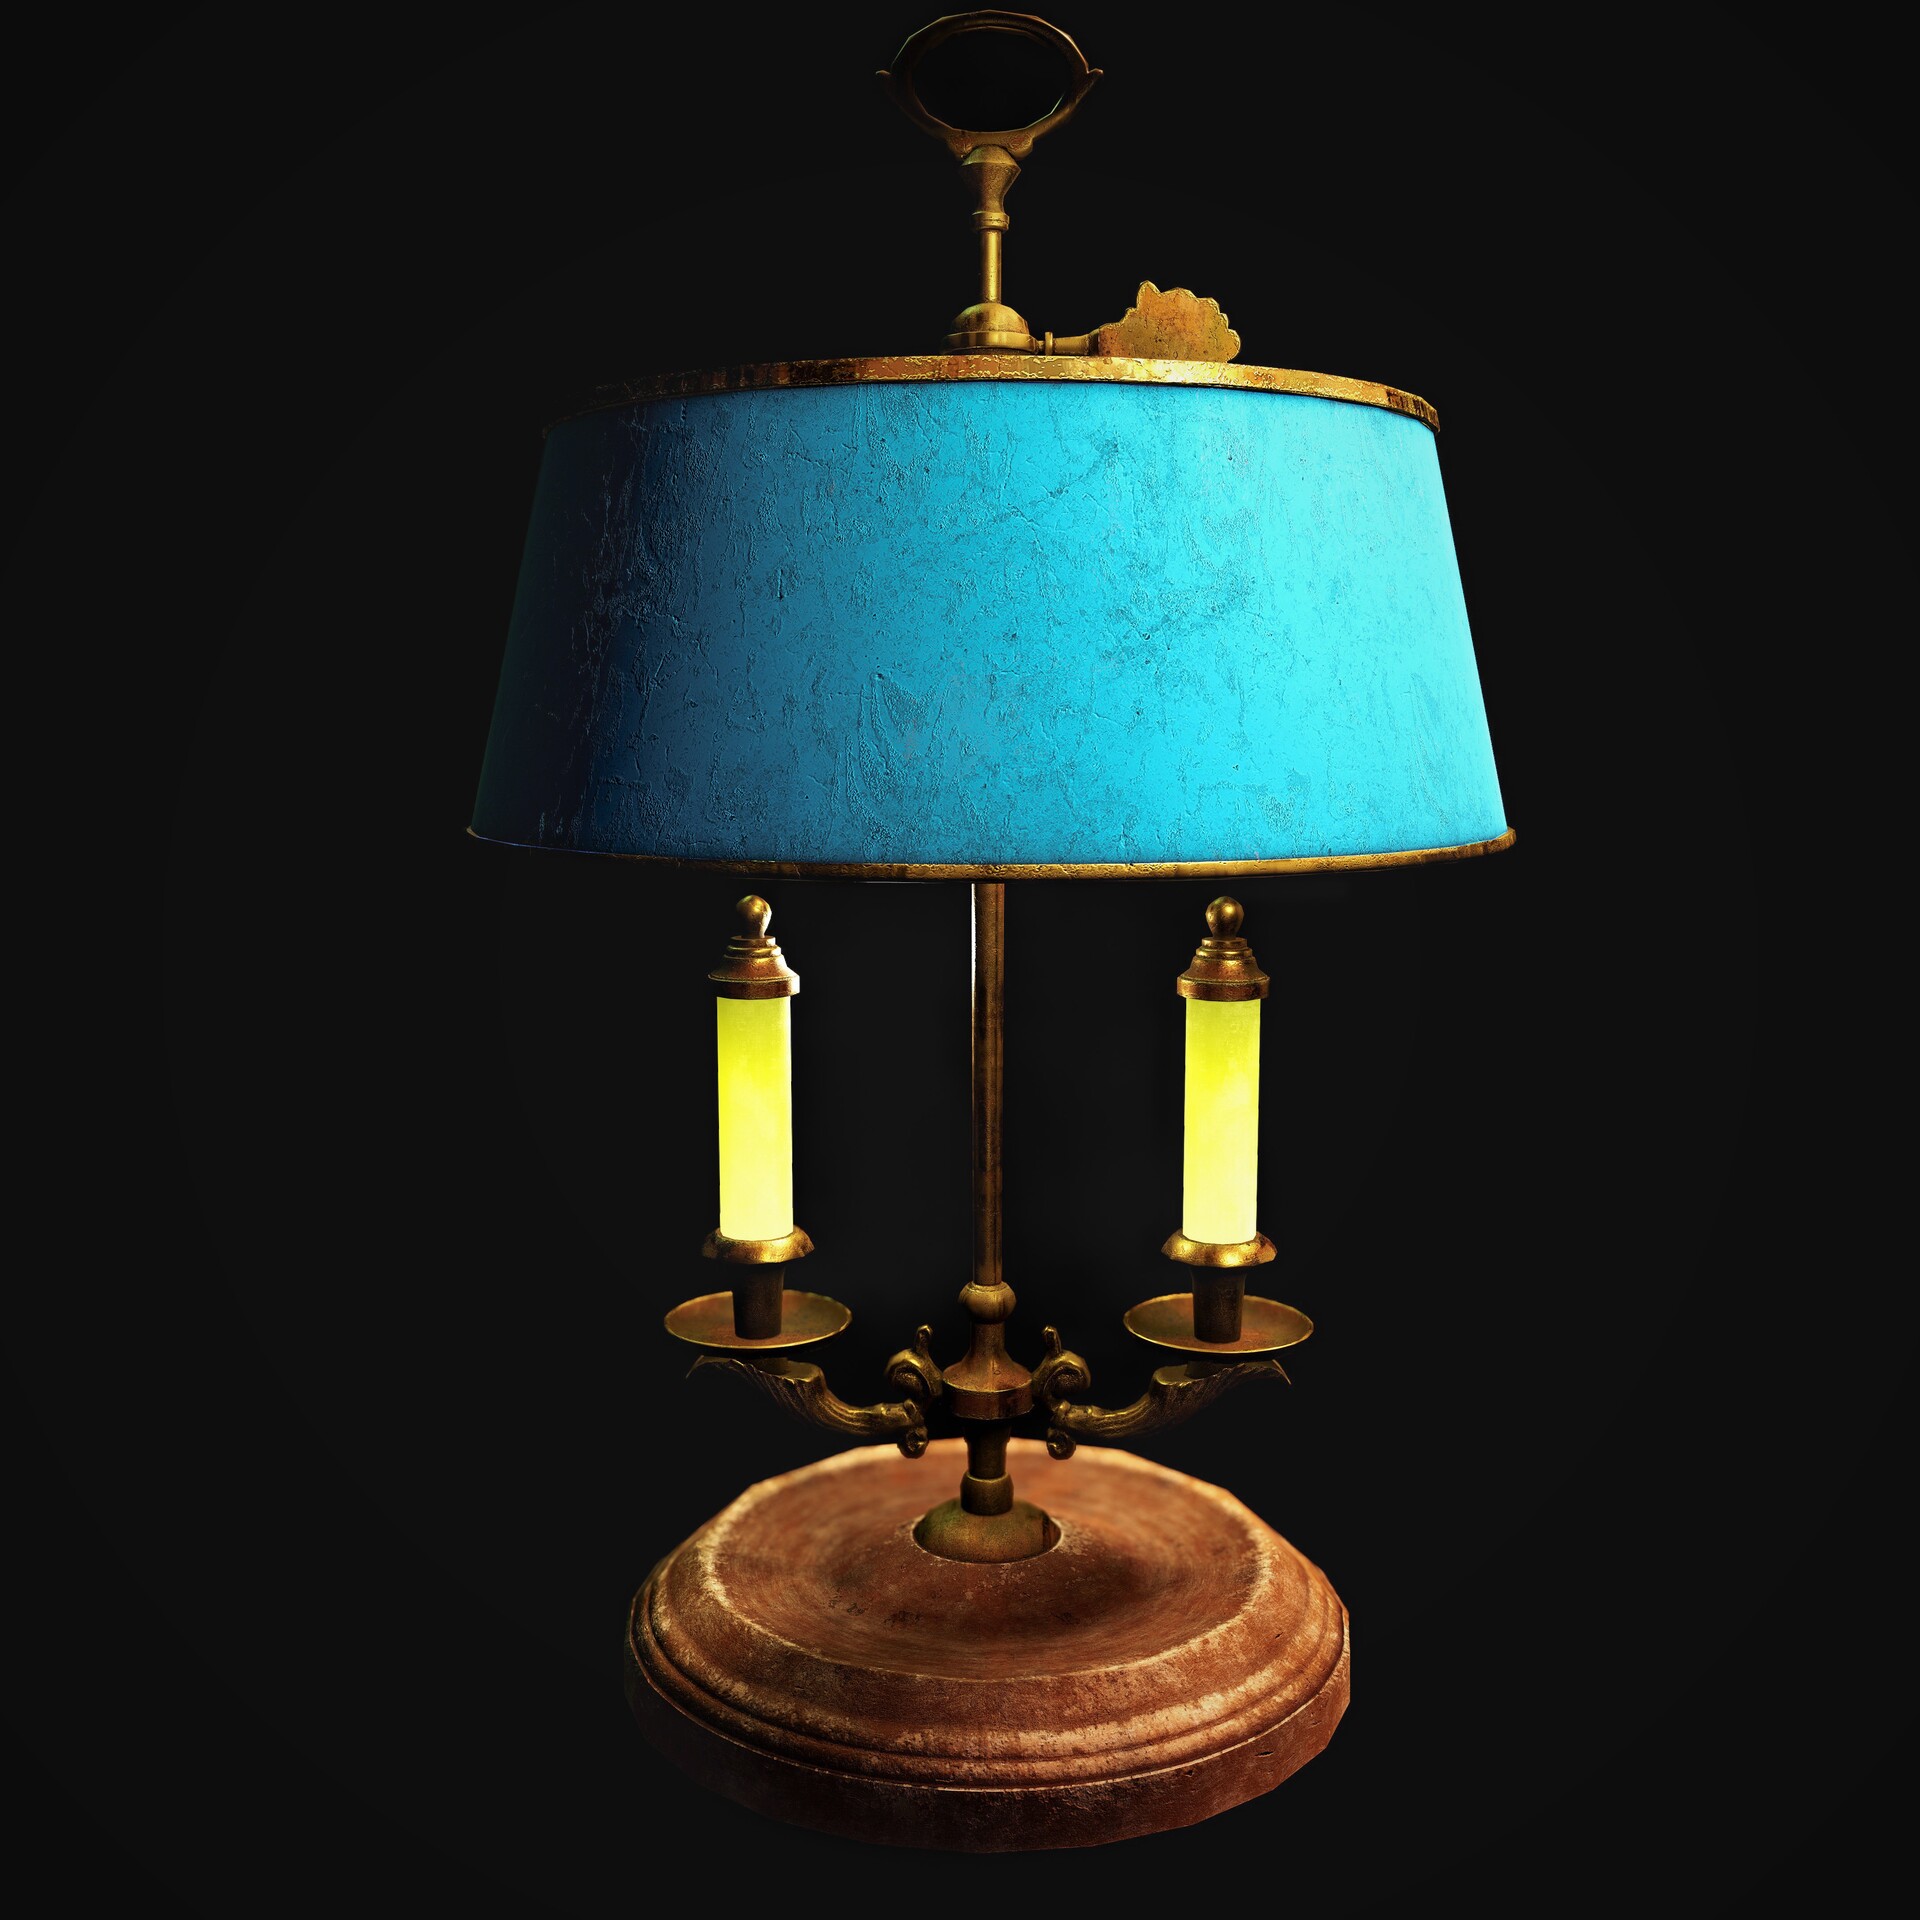 Grundlægger Tage en risiko Krage ArtStation - Lamp Victorian Style